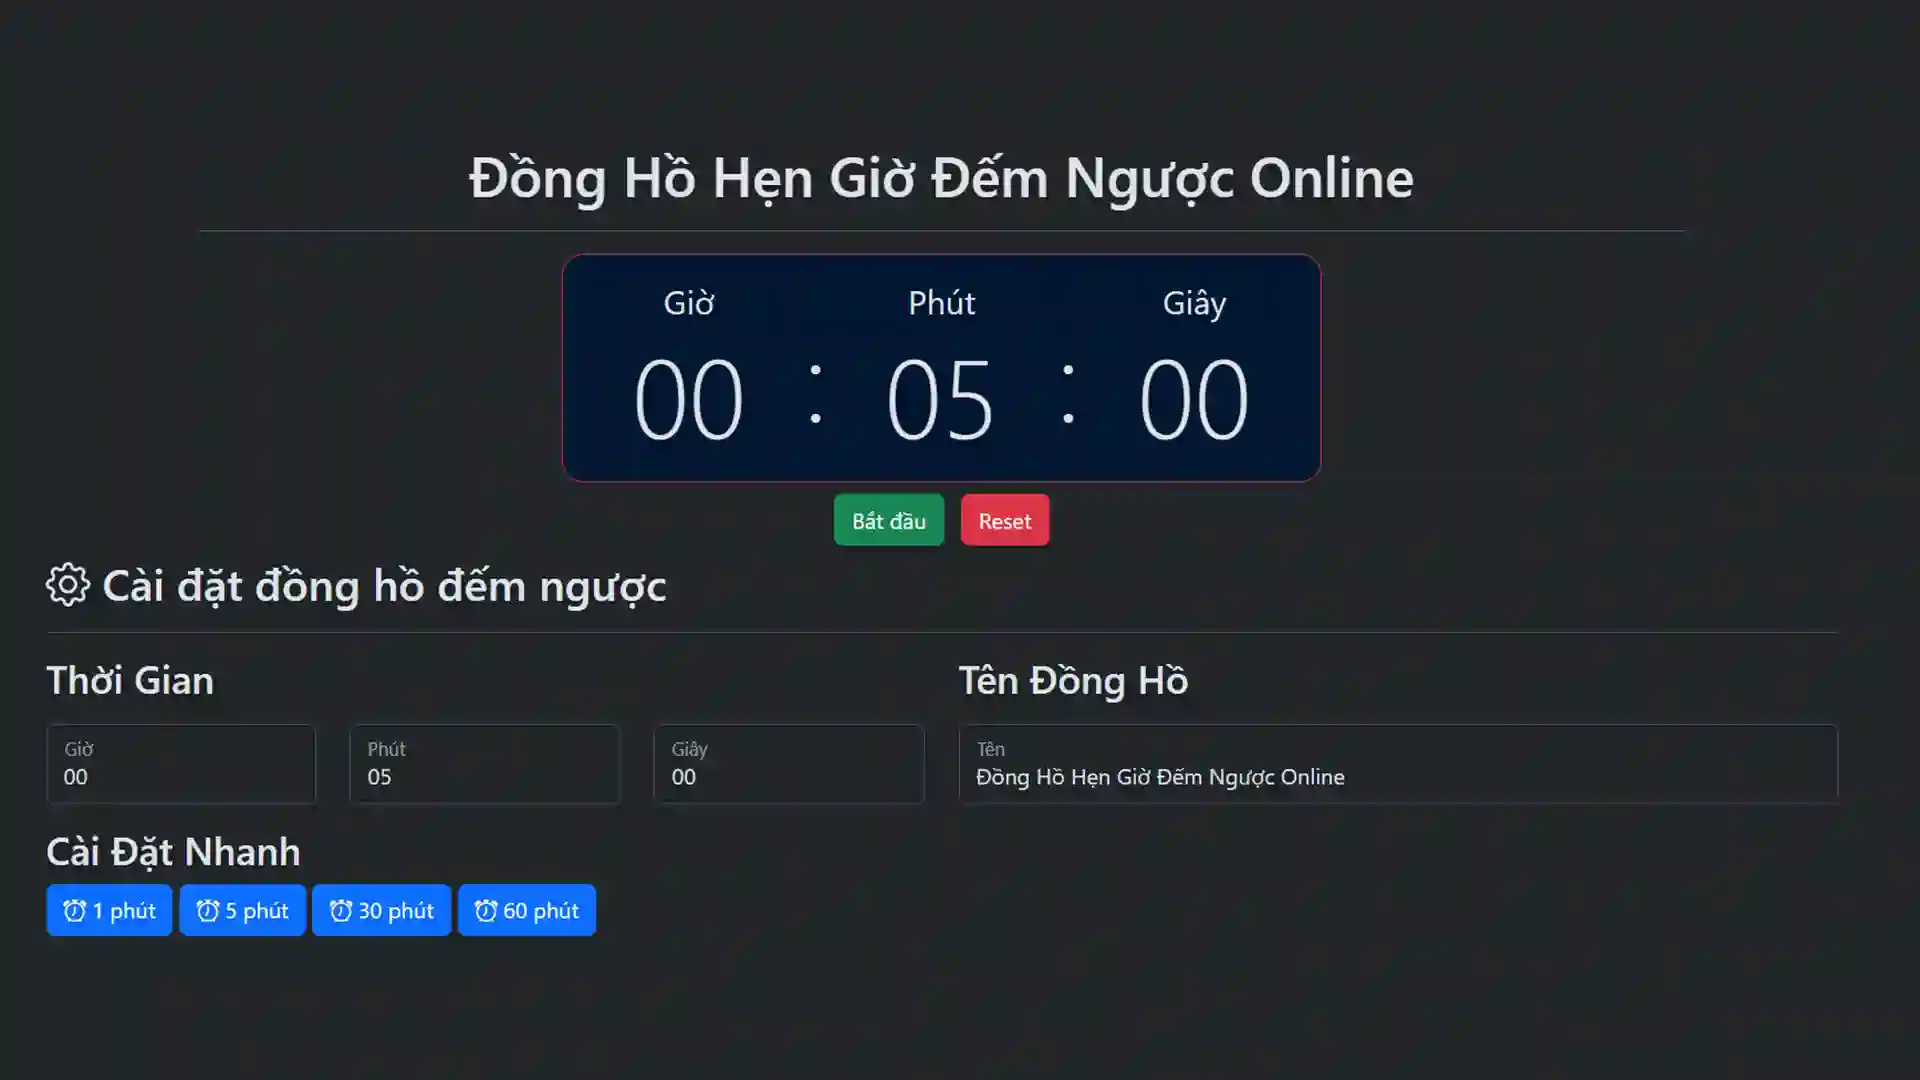 Đồng Hồ Hẹn Giờ Đếm Ngược Online